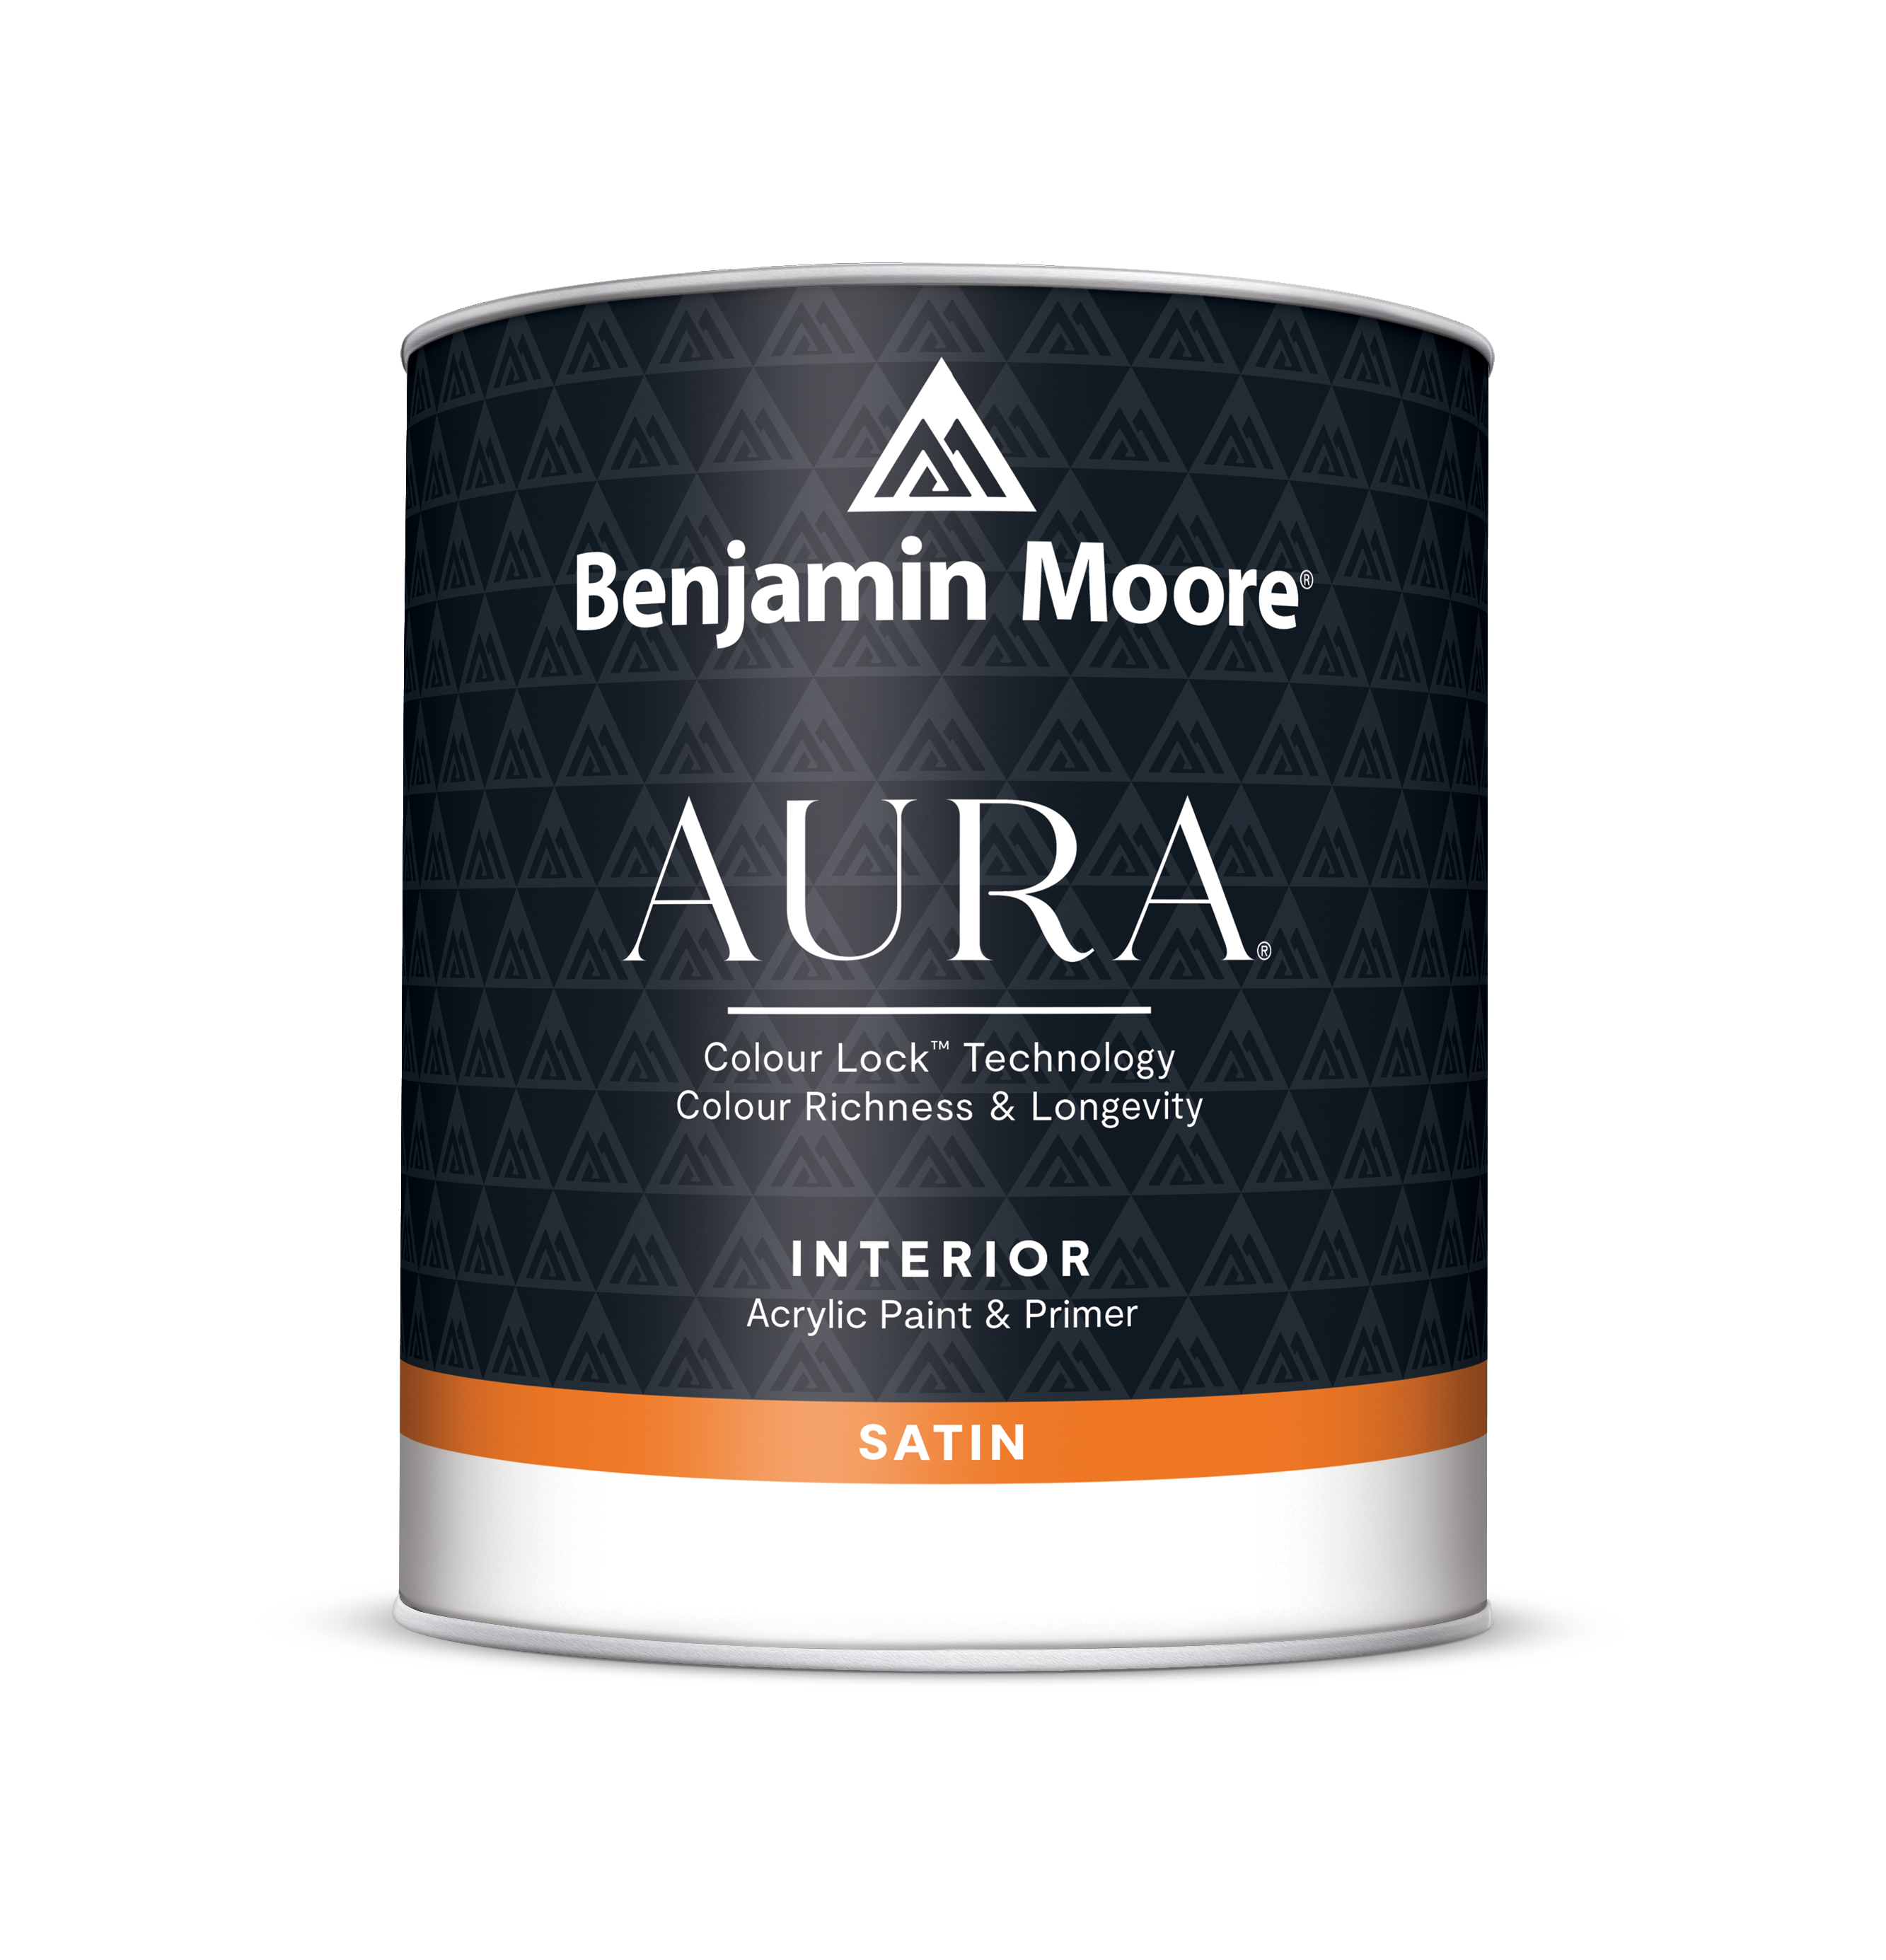 AURA® Waterborne Interior Paint bucket in Satin finish